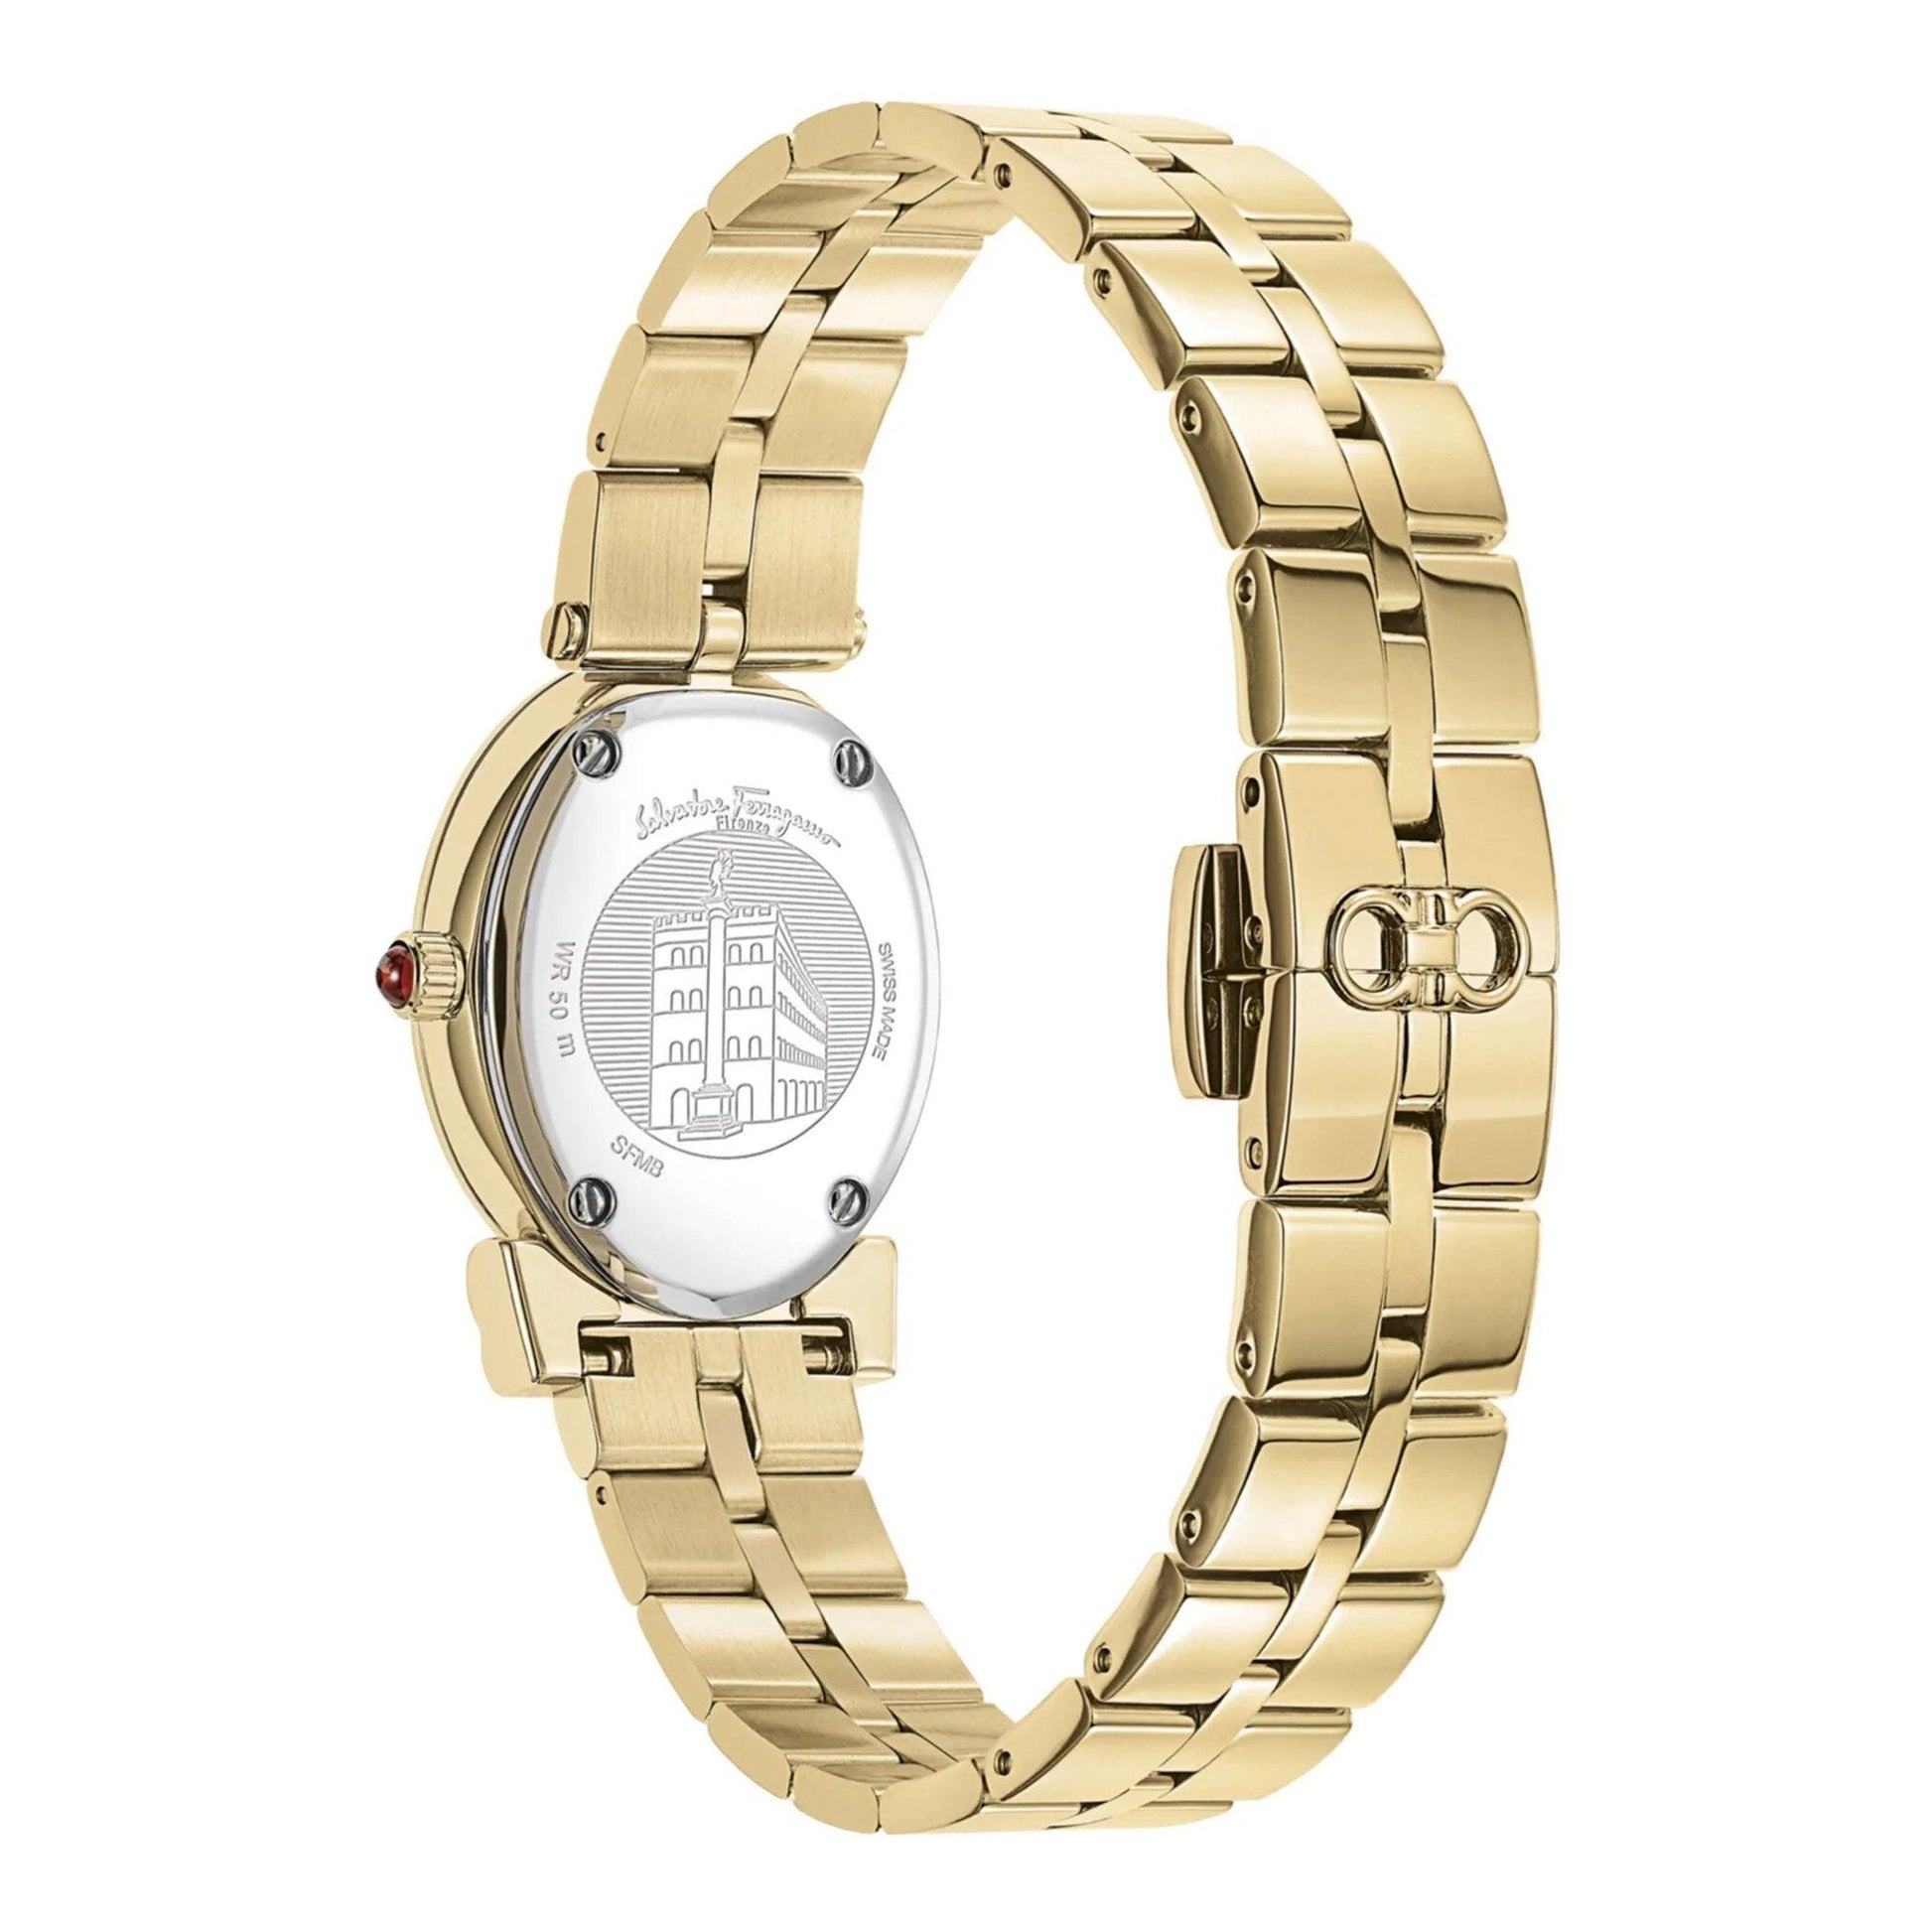 Salvatore Ferragamo Miroir SFMB00521 orologio donna al quarzo - Kechiq Concept Boutique